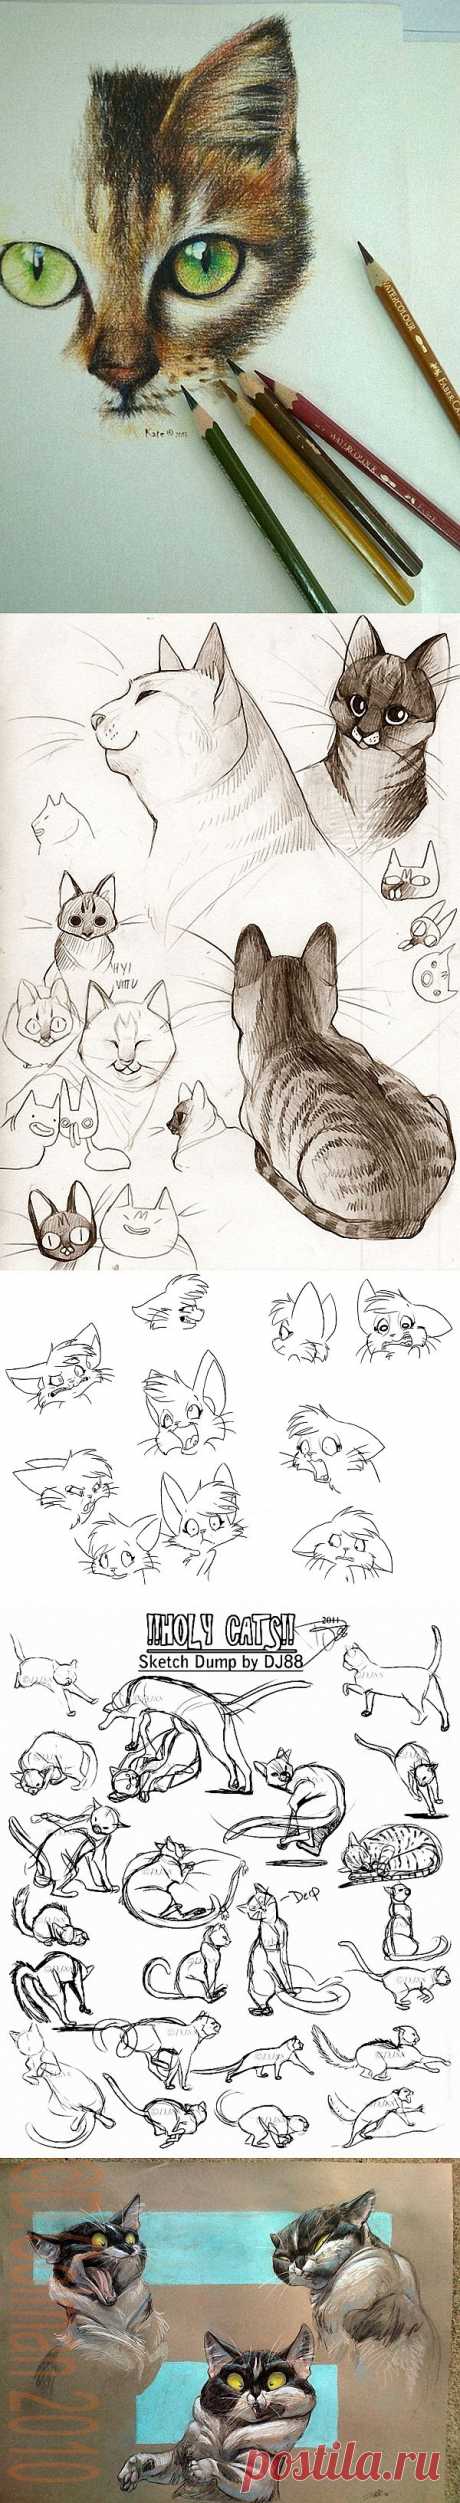 Кошки - очарование моё... Часть - 2. Рисование..